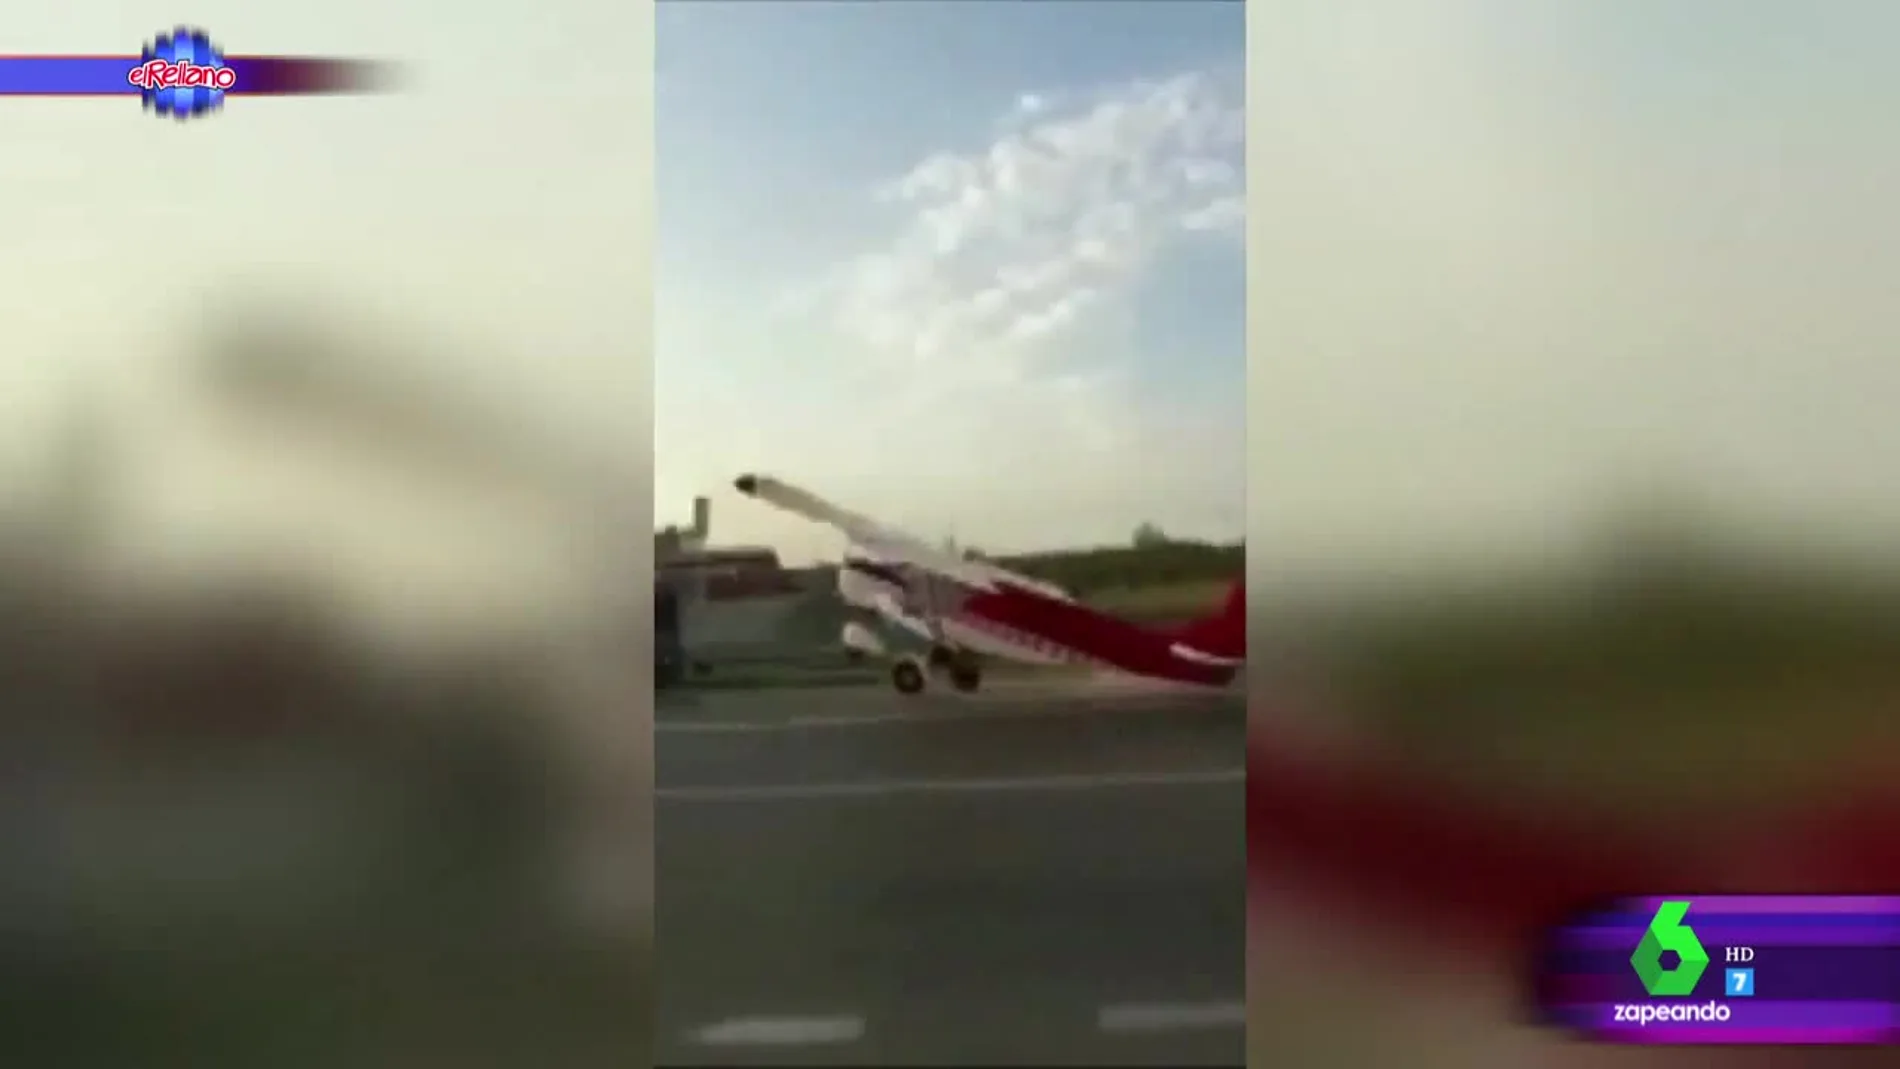 El sorprendente accidente entre un vehículo y una avioneta en mitad de la carretera